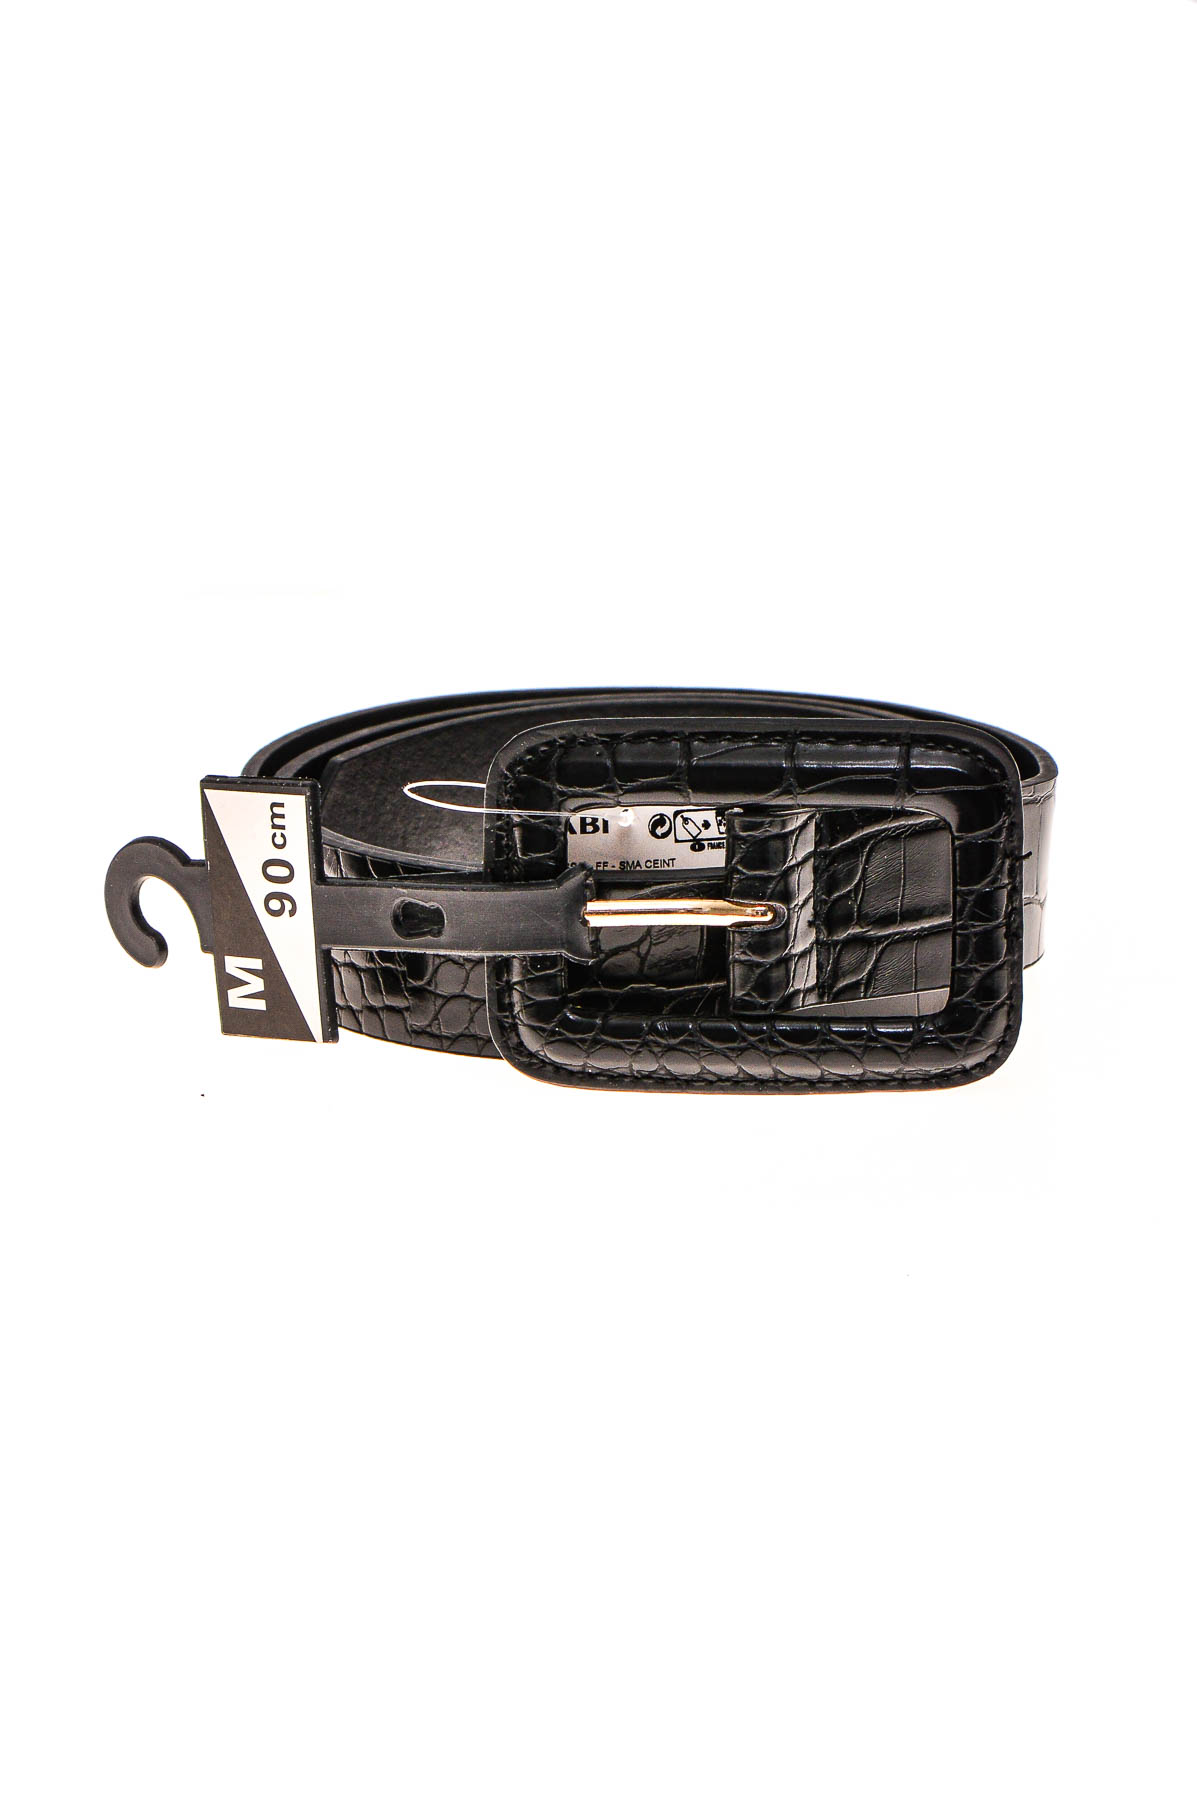 Ladies's belt - KAIBI - 0